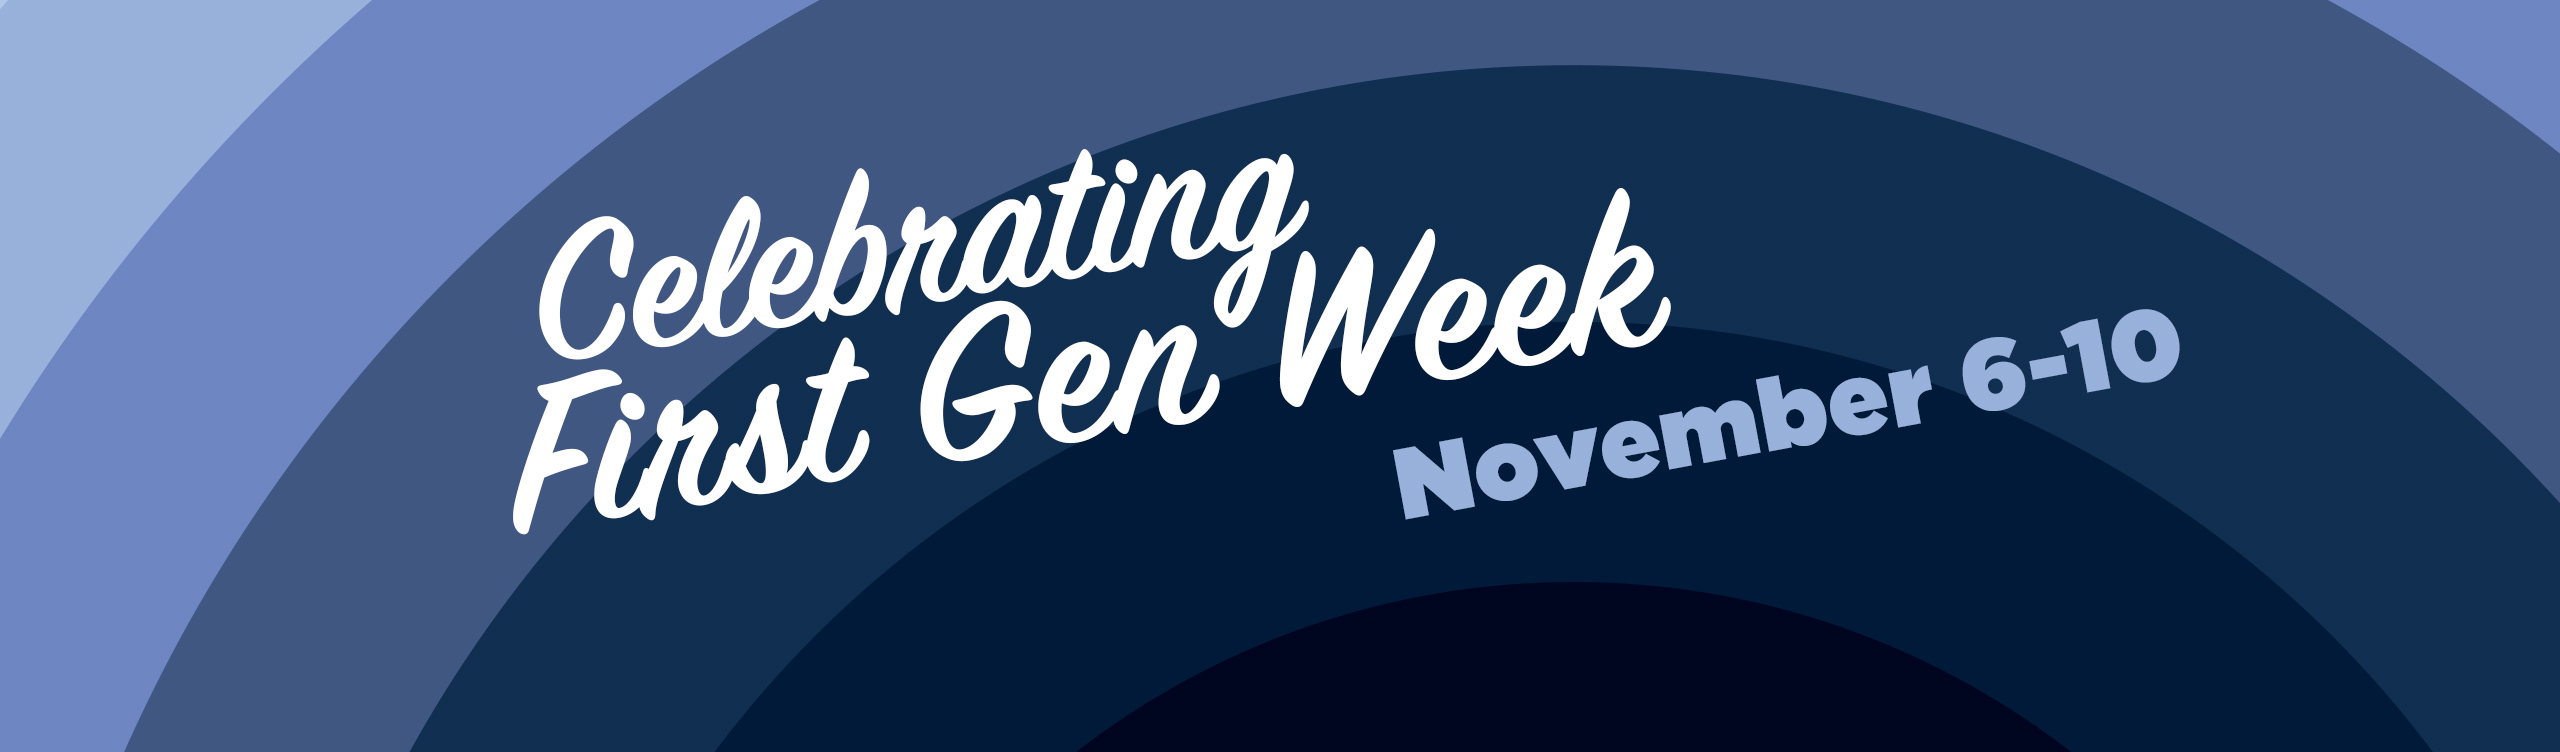 First Gen Week: November 6-10